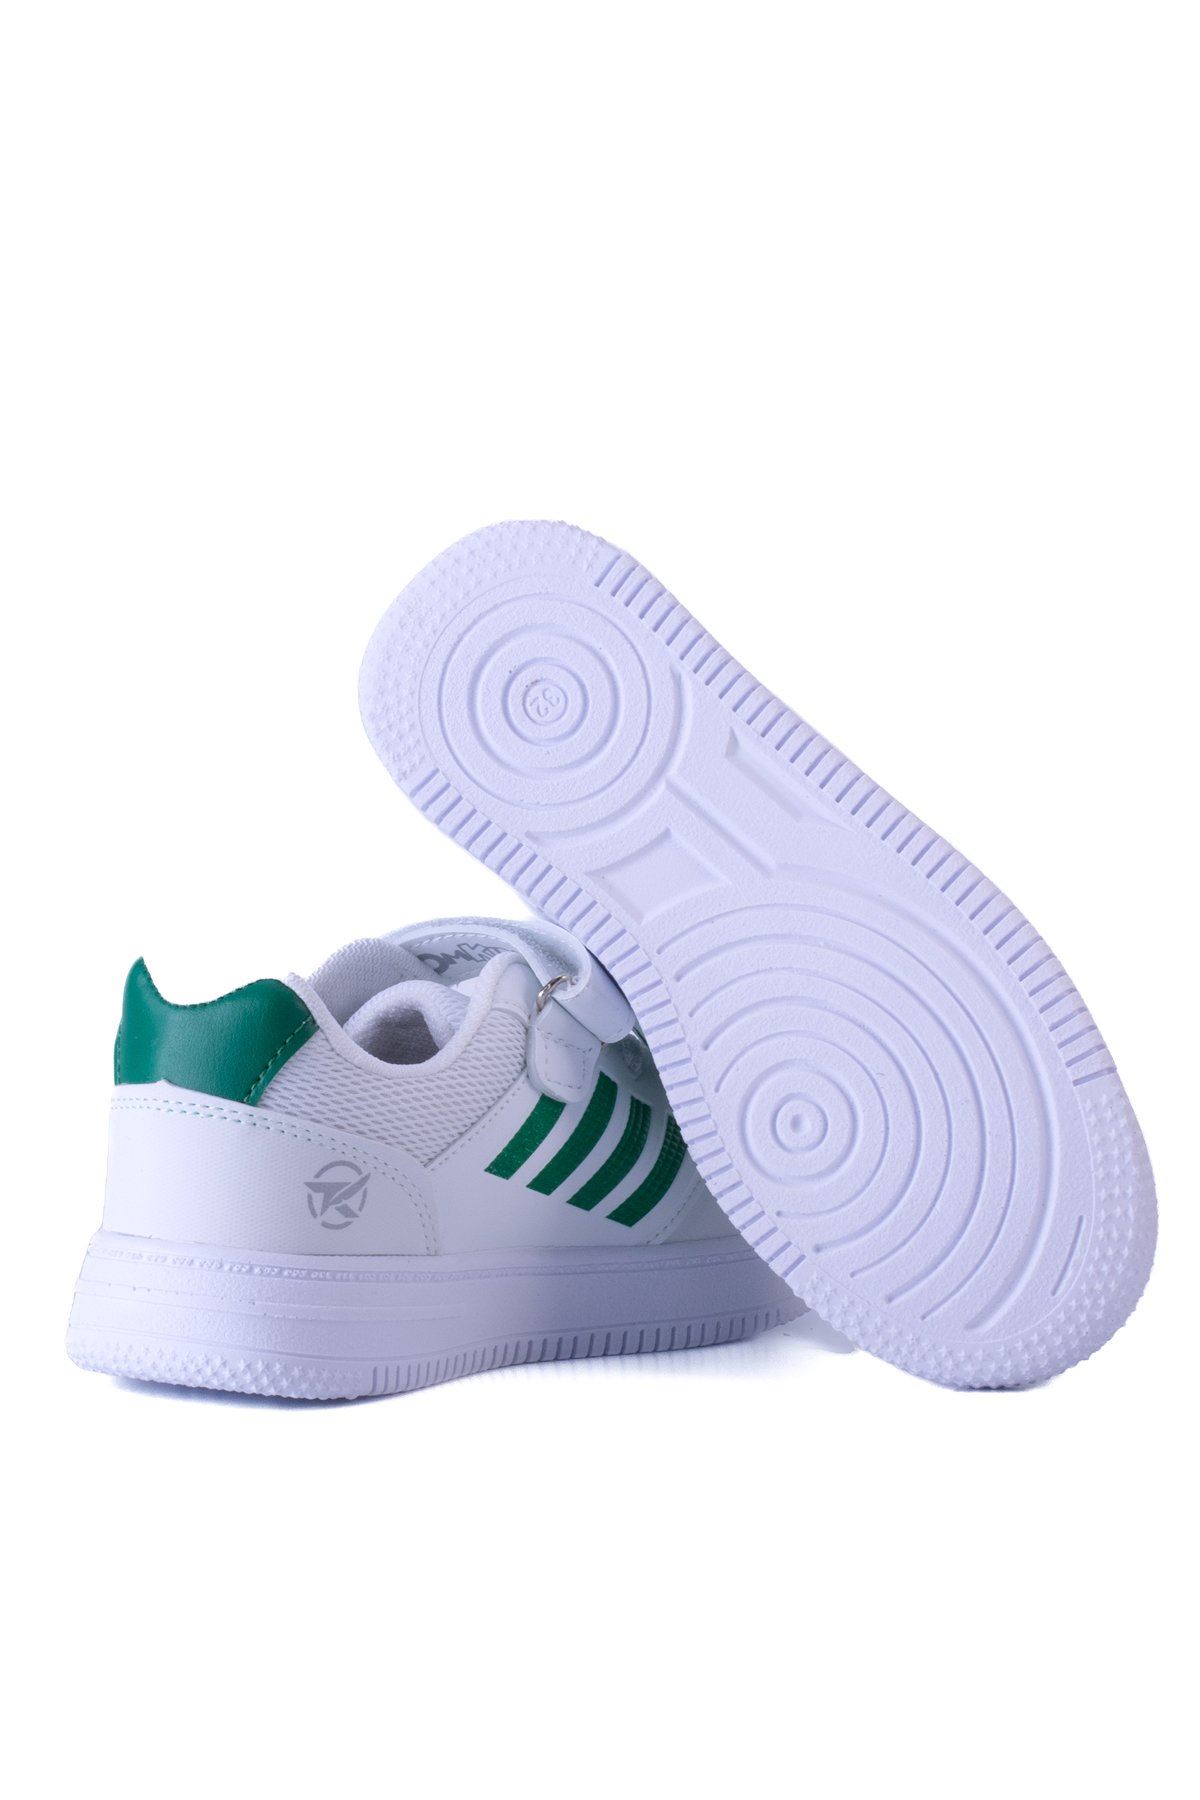 Çocuk Sneaker T103 - Beyaz Yeşil